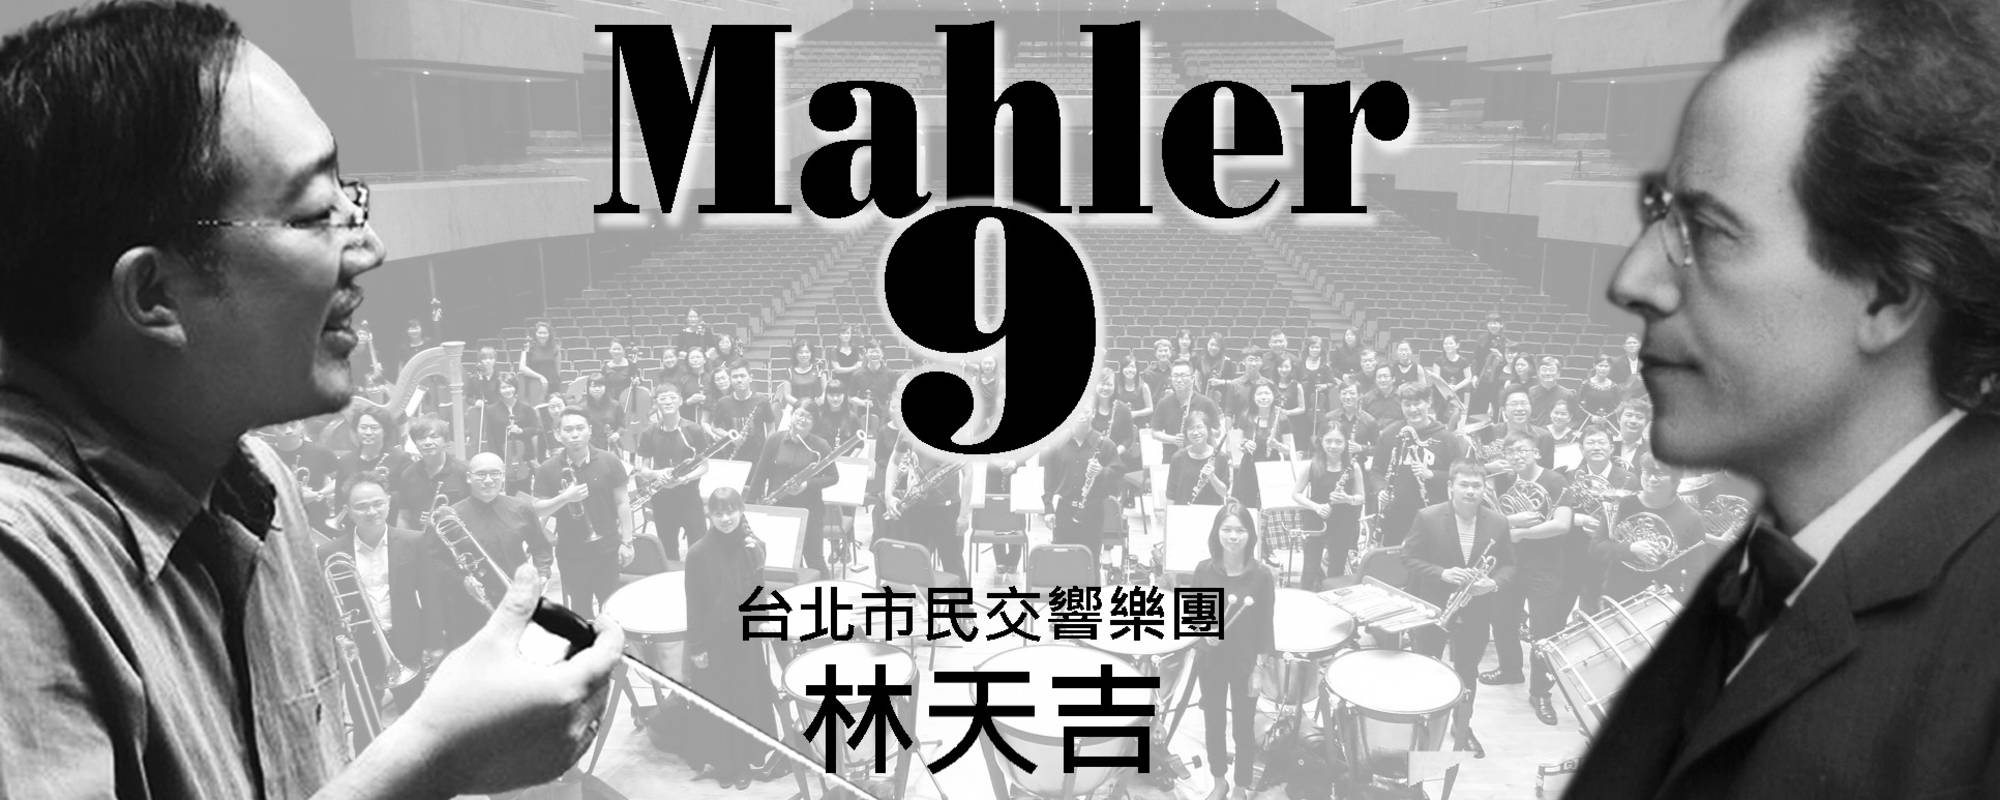 台北市民交響樂團定期音樂會 110